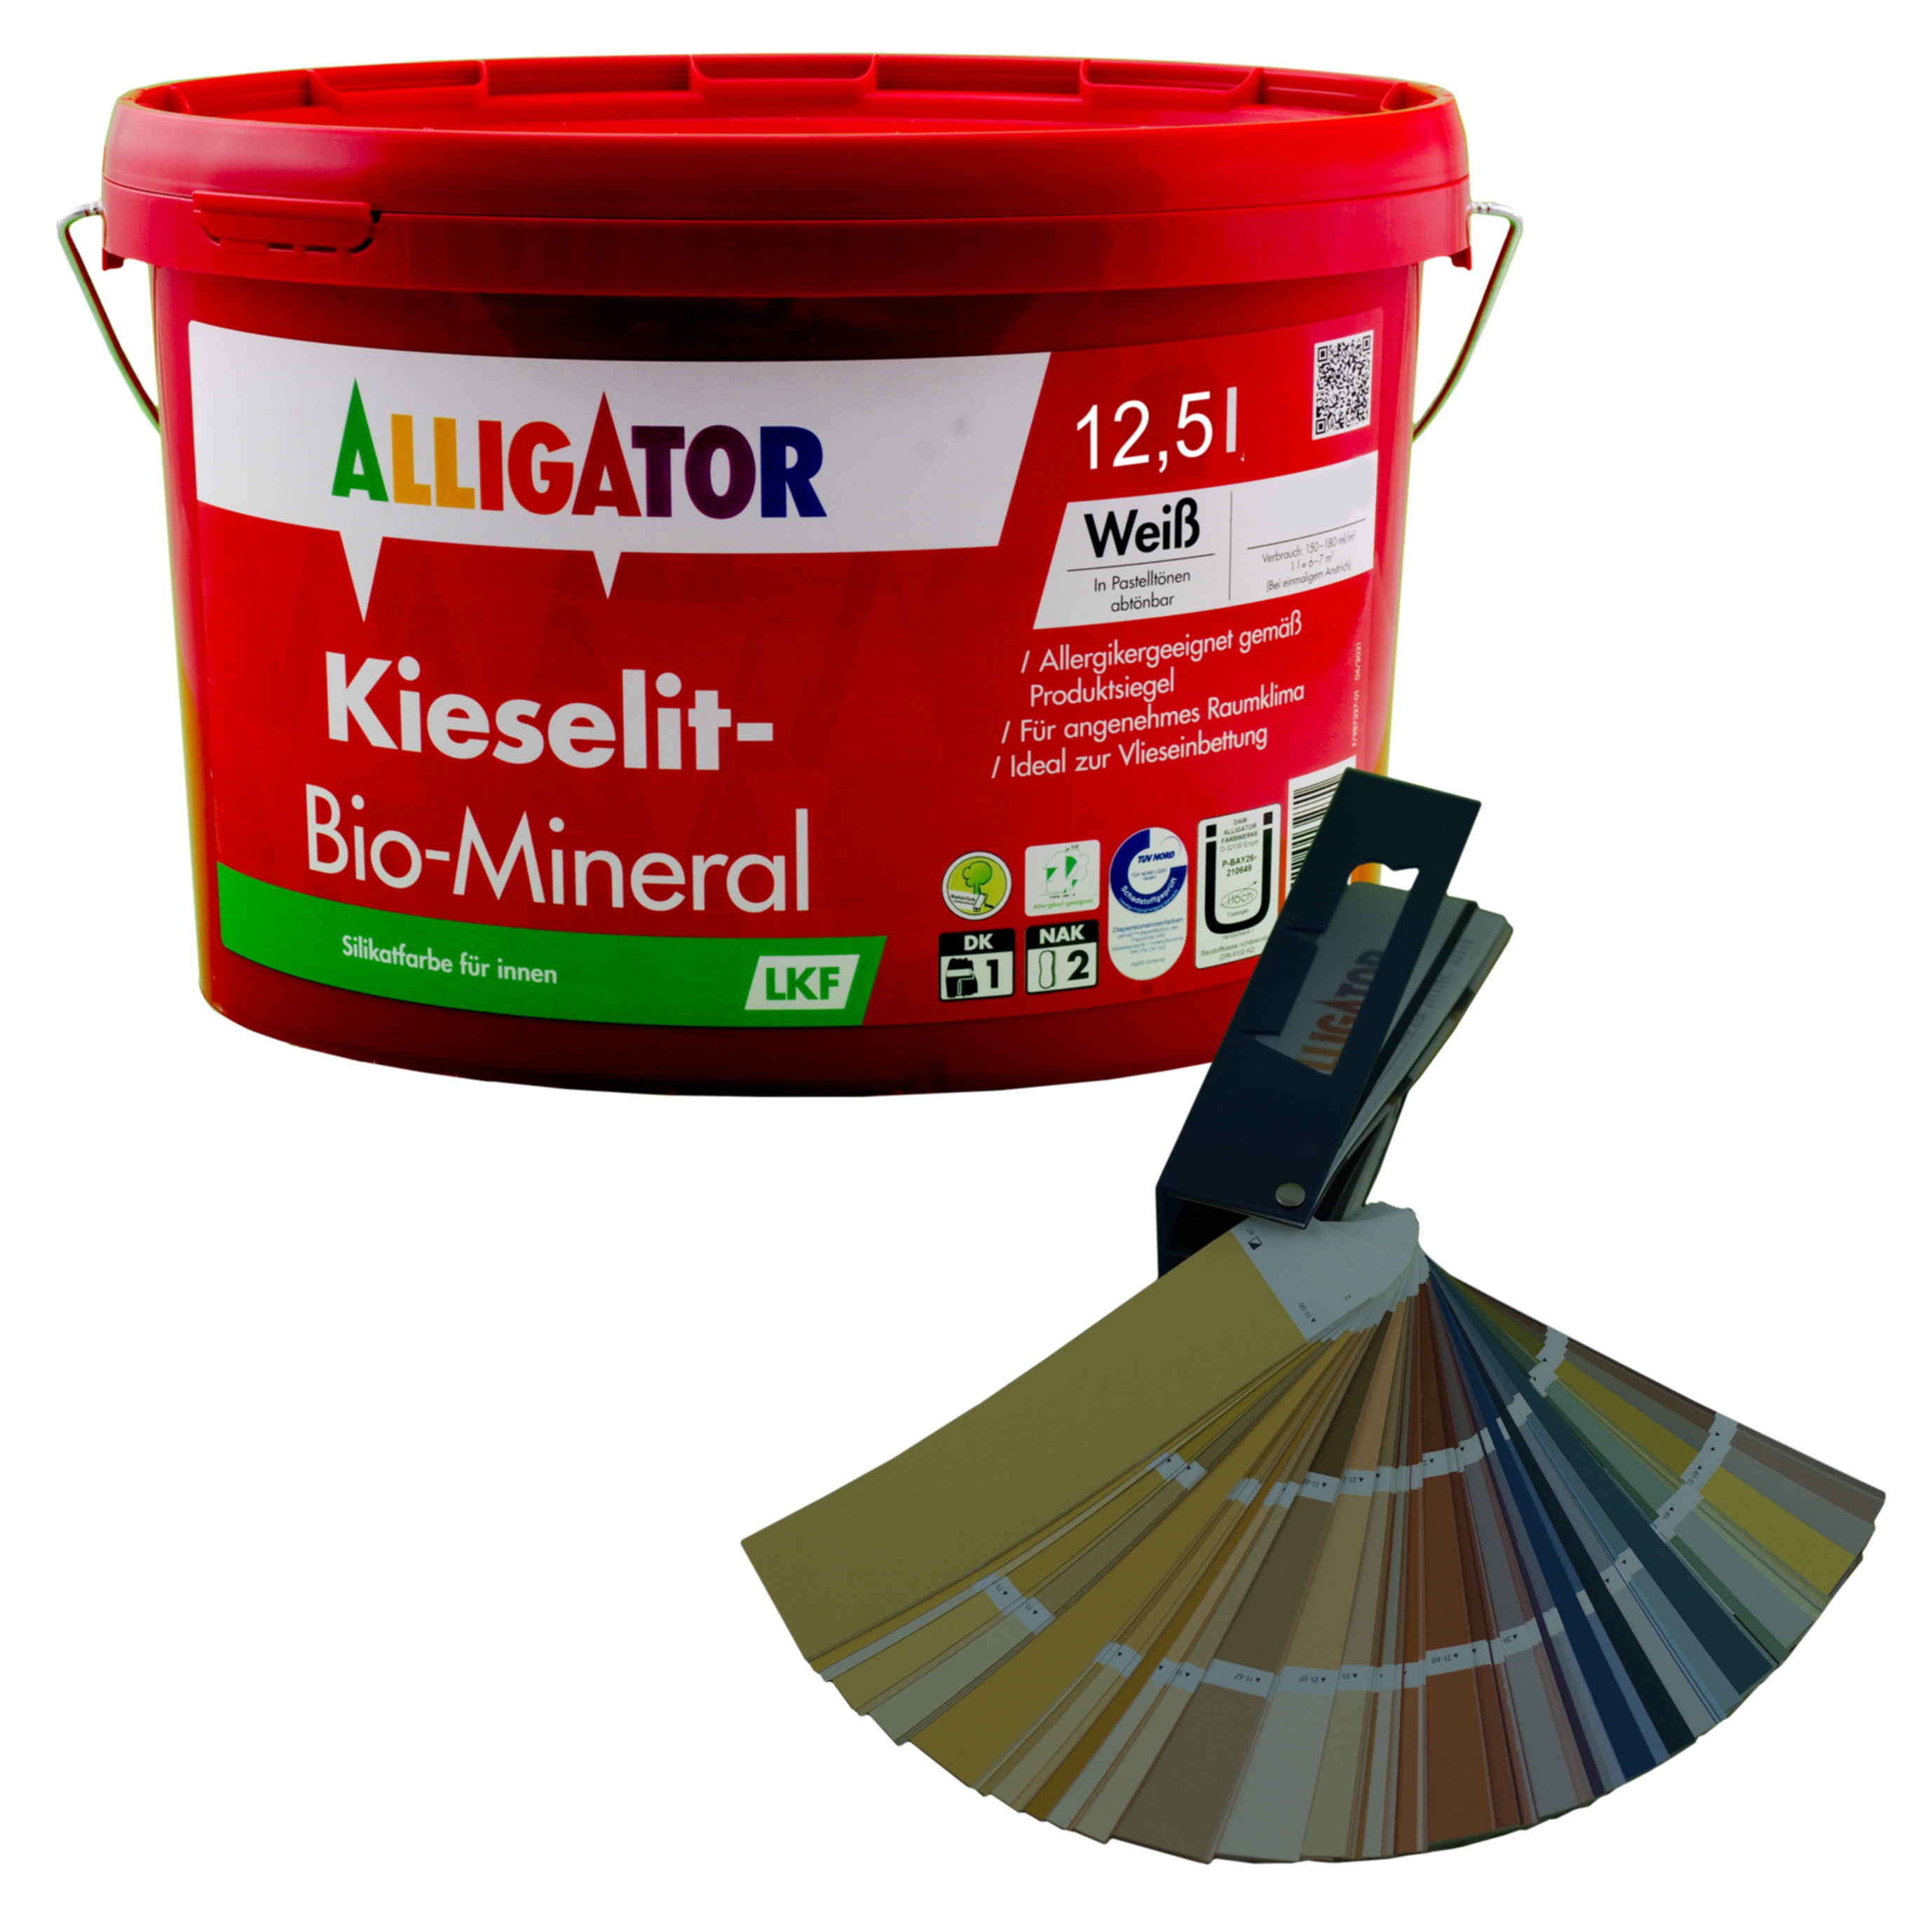 Alligator Kieselit-Bio-Mineral LKF 12,5 ltr. mix PG6